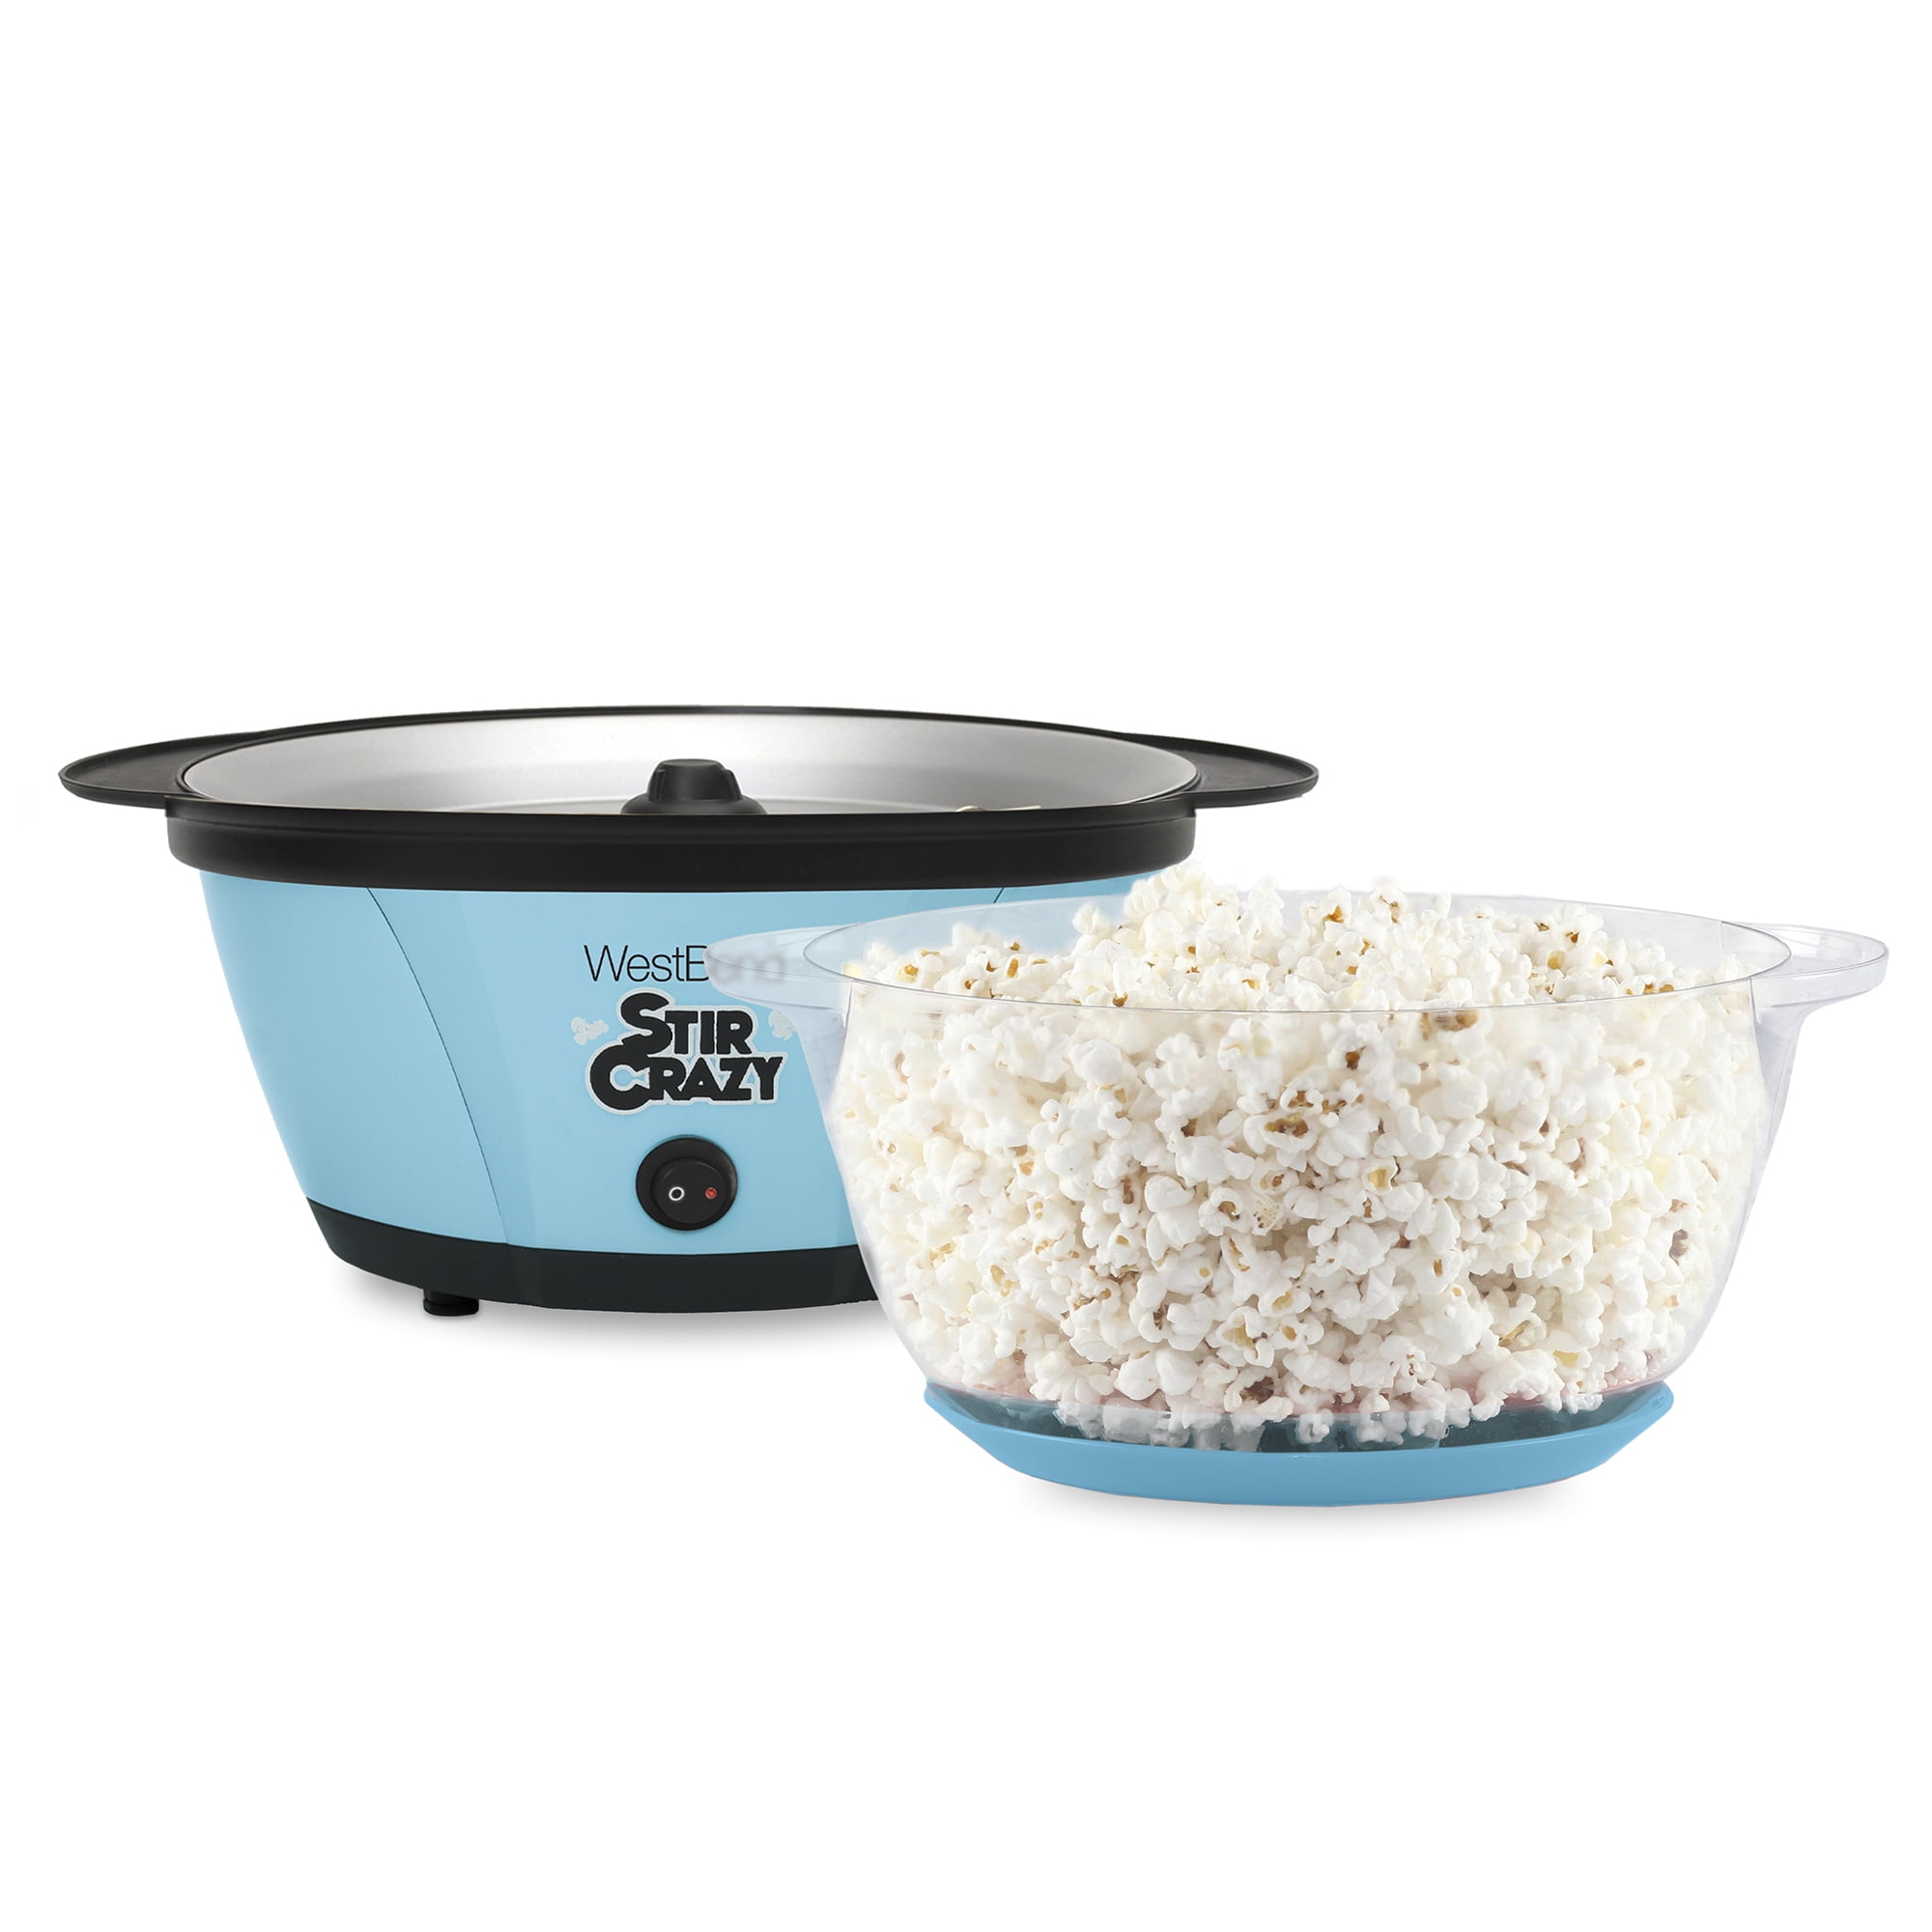 WestBend Stir Crazy Popcorn Popping Machine - Nex-Tech Classifieds